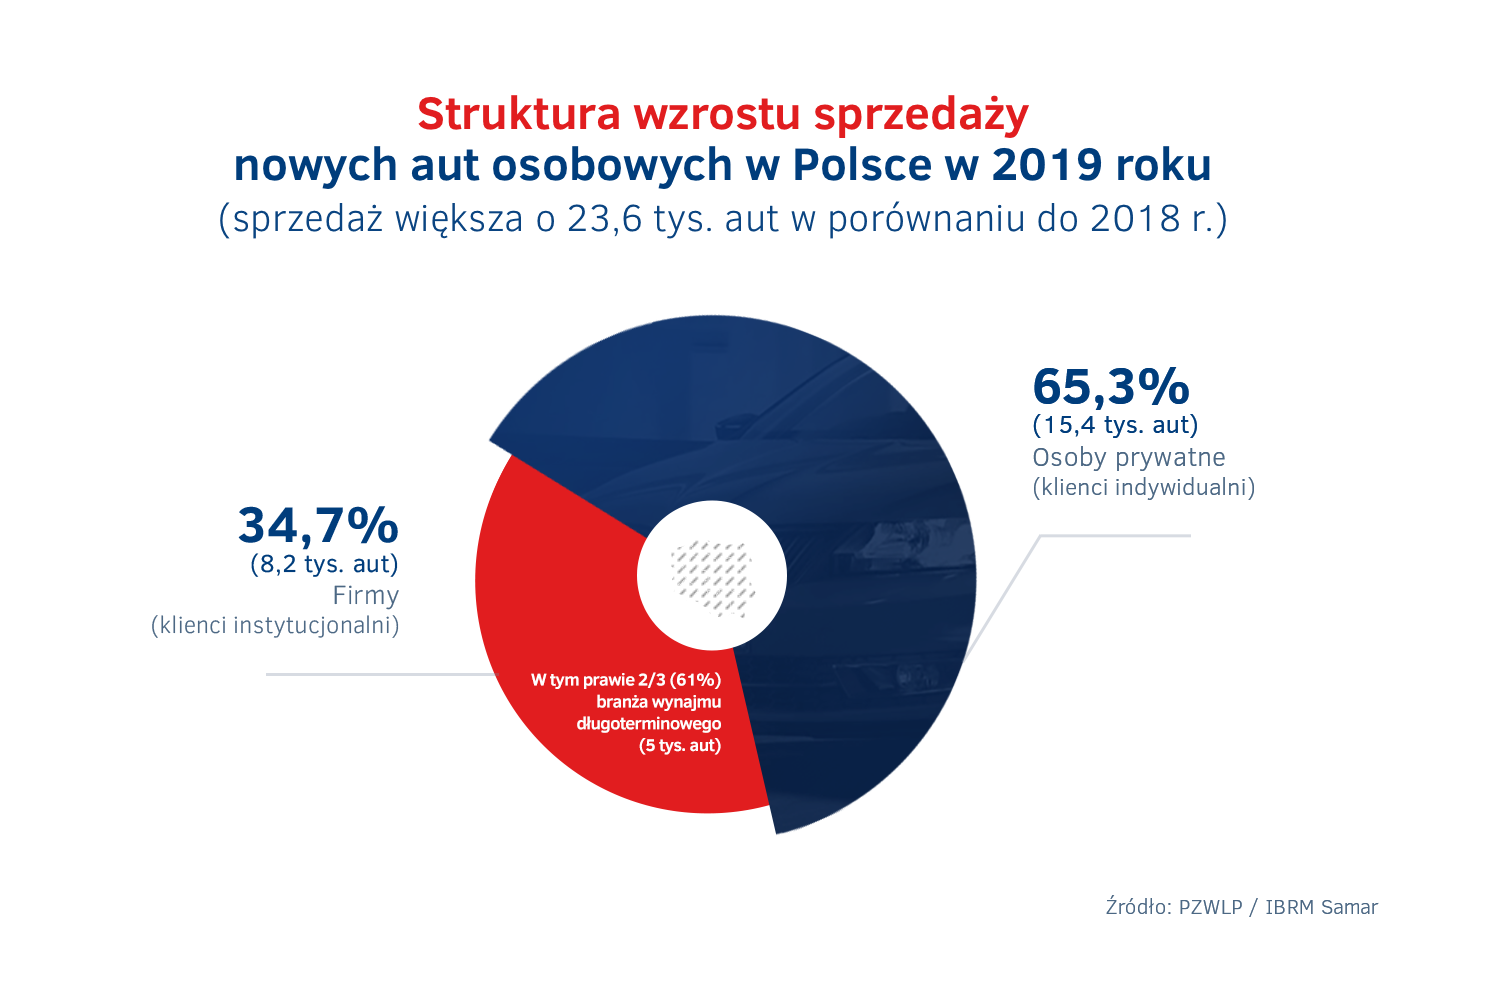 Struktura wzrostu sprzedazy nowych aut w Polsce 2019